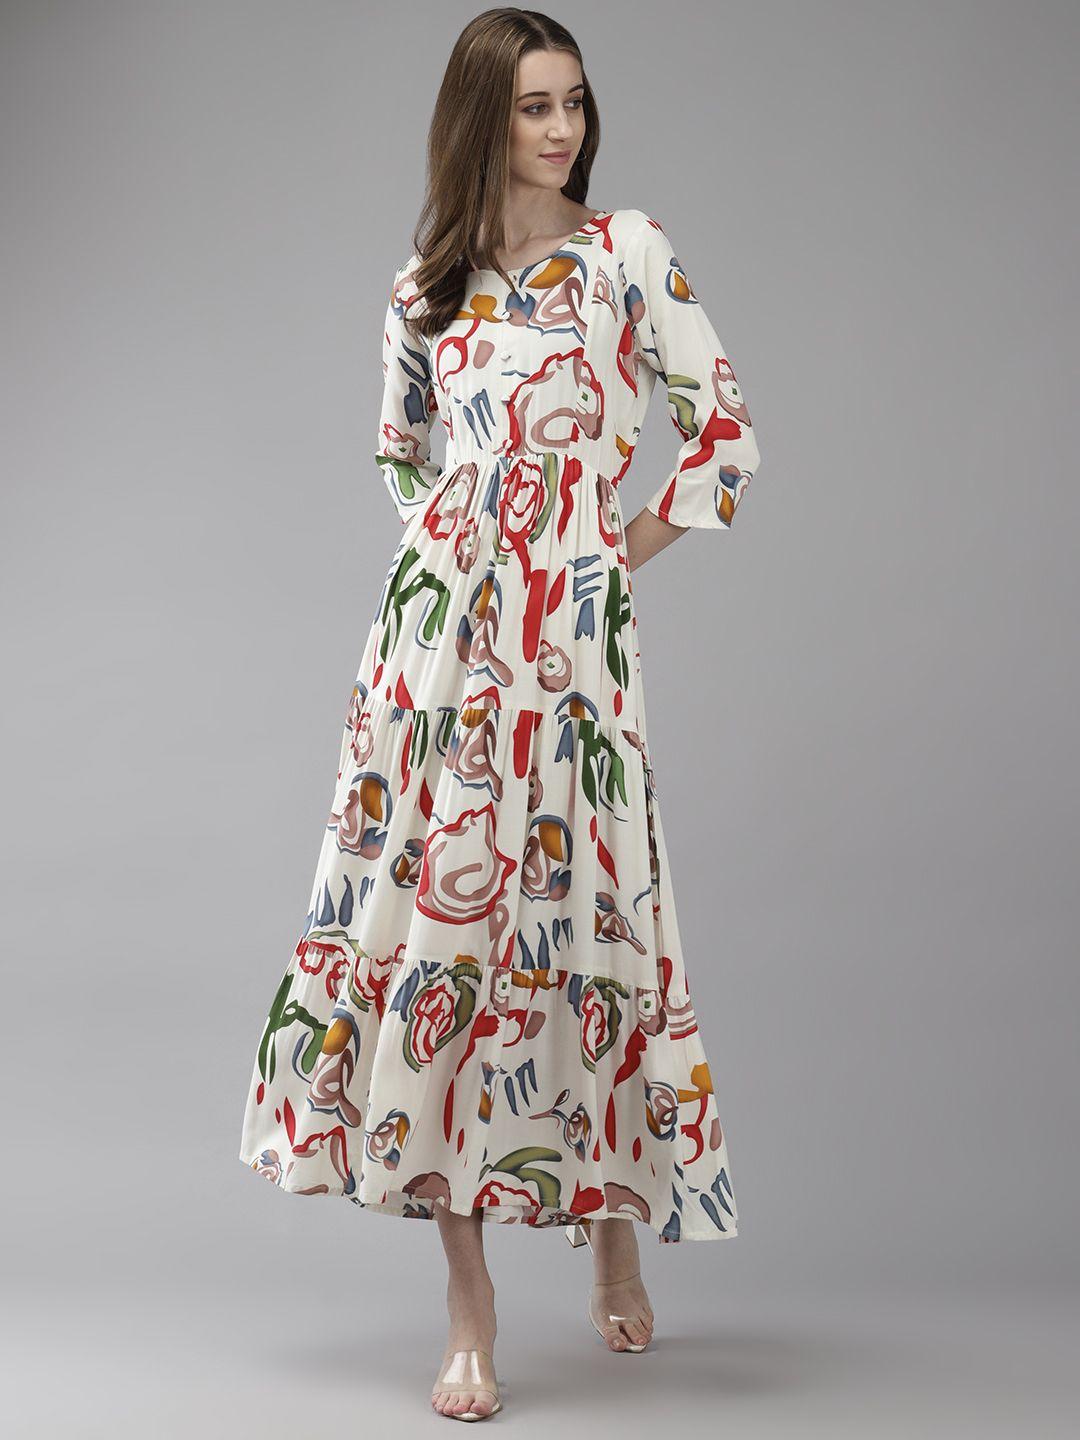 aarika print georgette a-line maxi dress